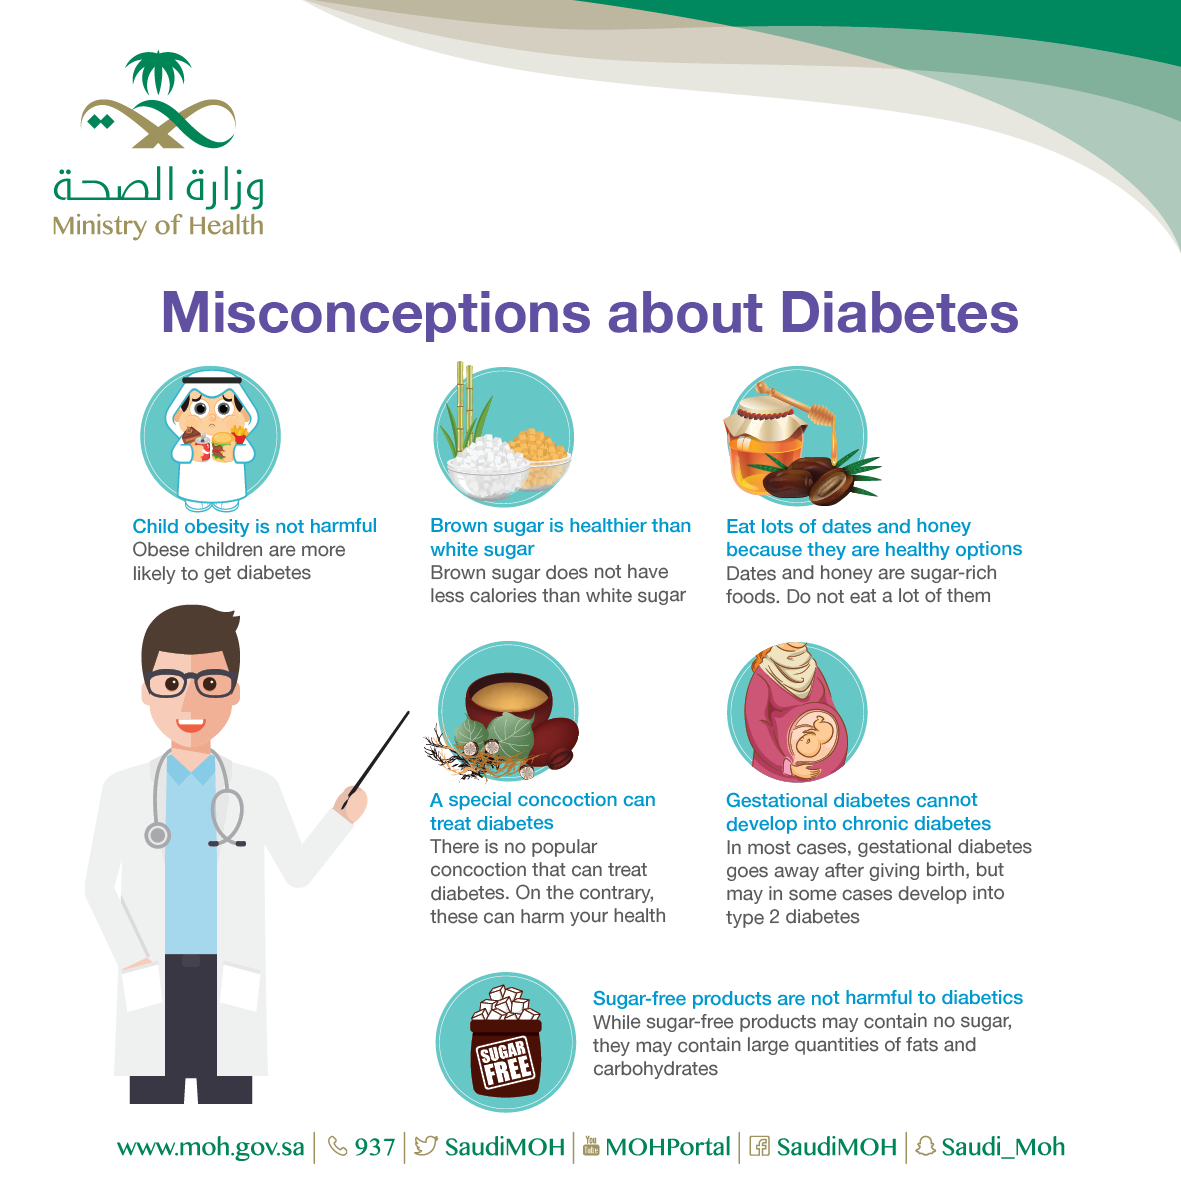 Diabetse Misconceptions